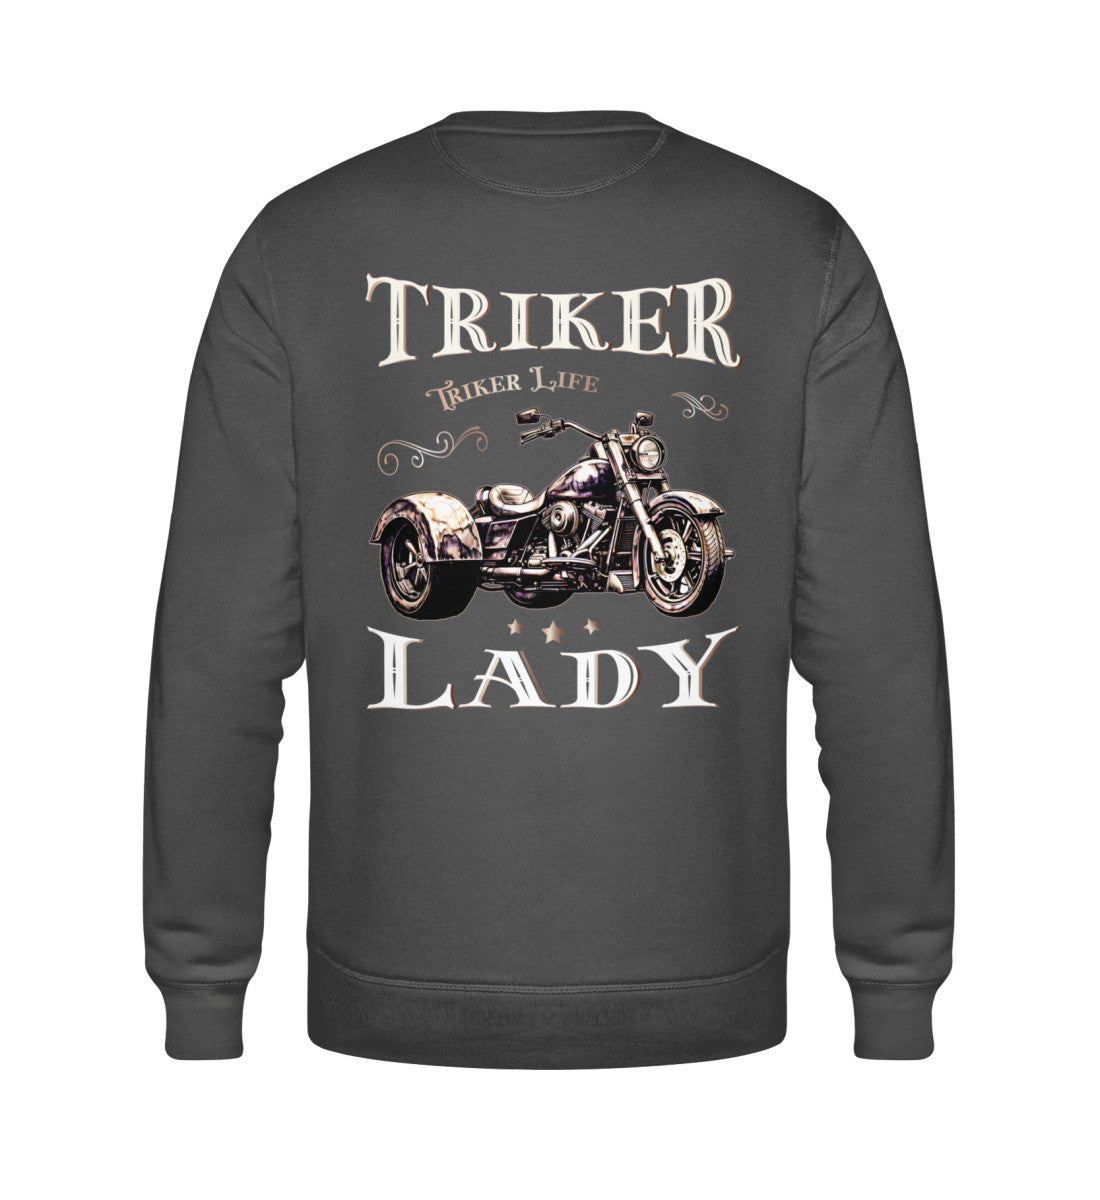 Ein Sweatshirt für Trike Fahrerinnen von Wingbikers mit dem Aufdruck, Triker Lady - Triker Life, im vintage Stil, als Back Print, in dunkelgrau.